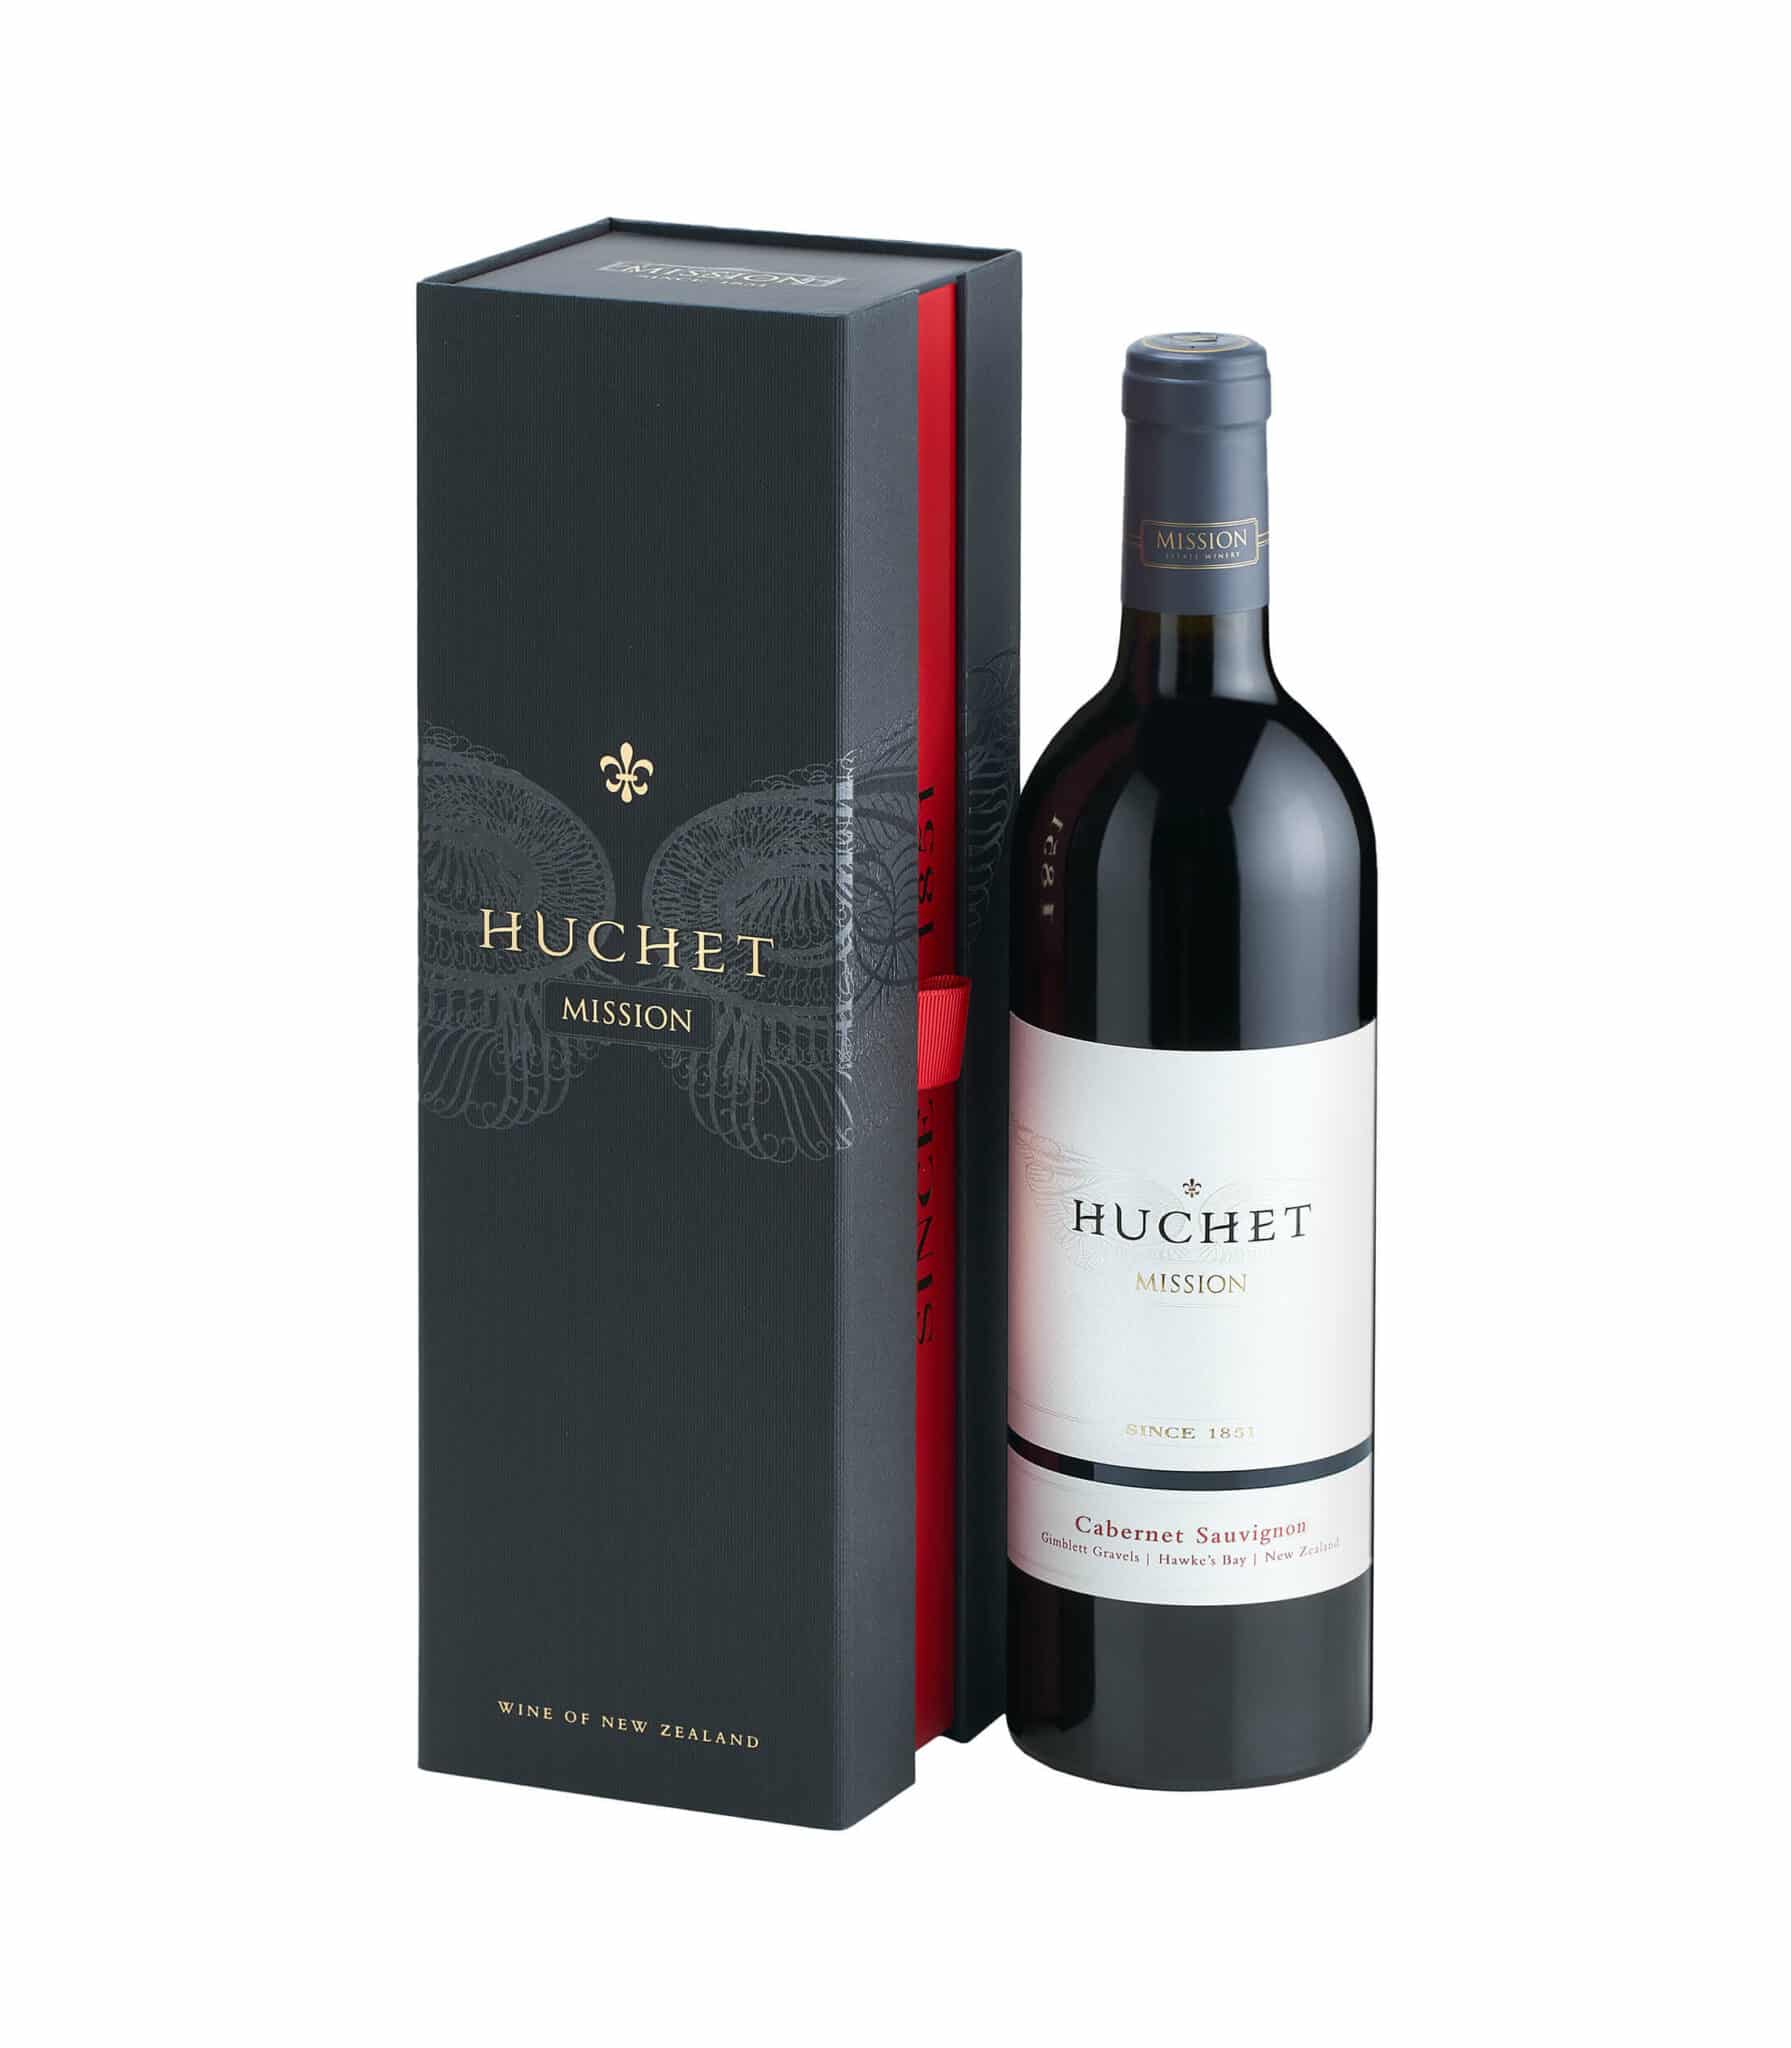 Sauvignon Cabernet - Estate 2018 Huchet Winery Mission